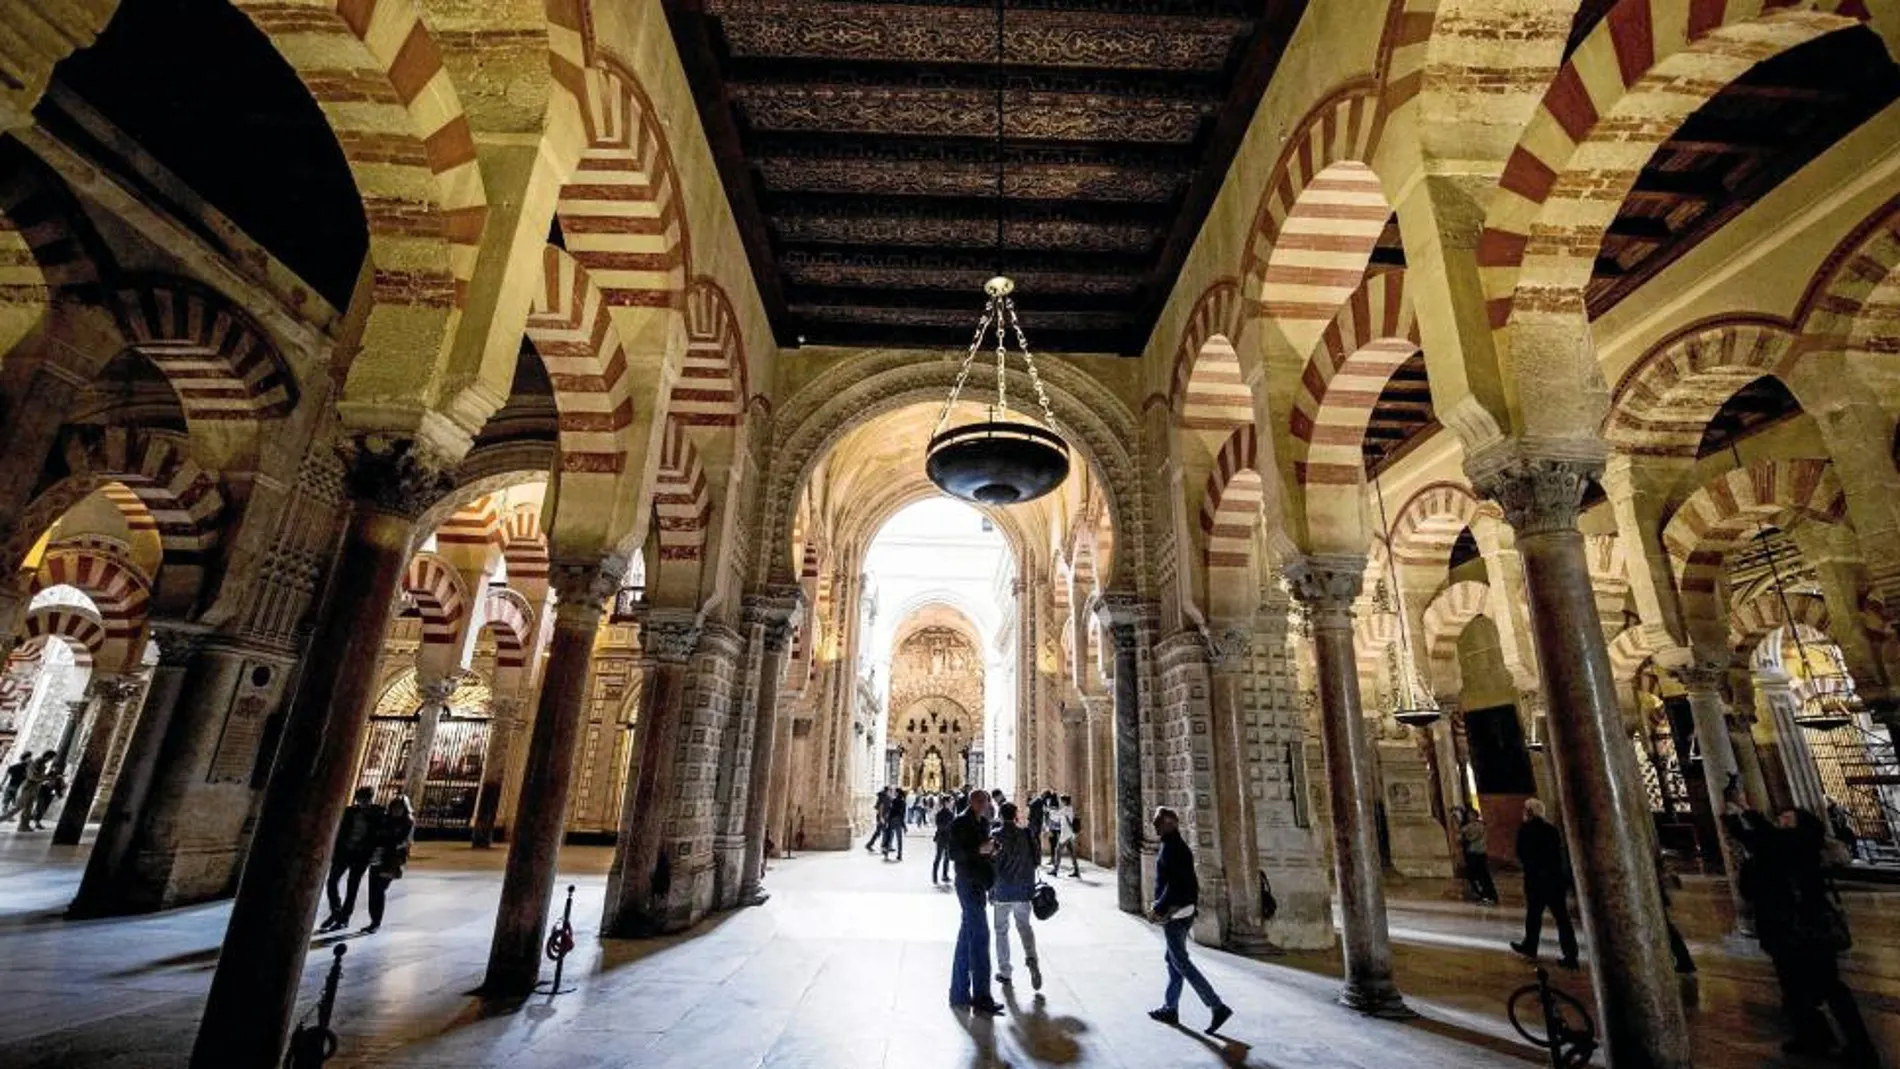 La Mezquita-Catedral de Córdoba ha registrado un número récord de visitantes durante 2014